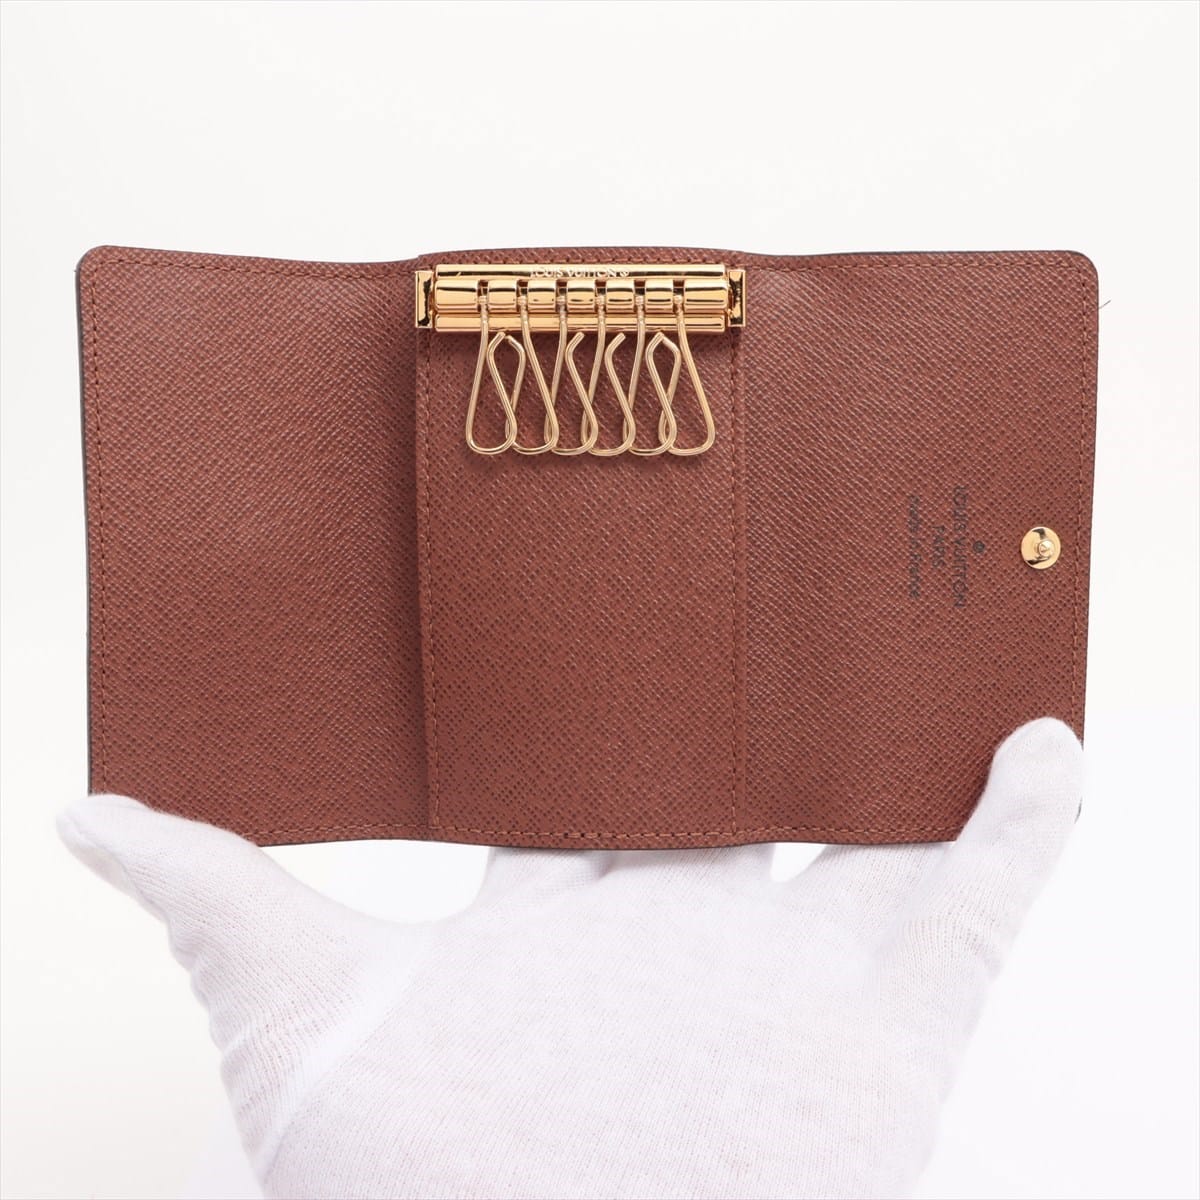 Louis Vuitton Monogram Multiclés 6 M62630 Key case